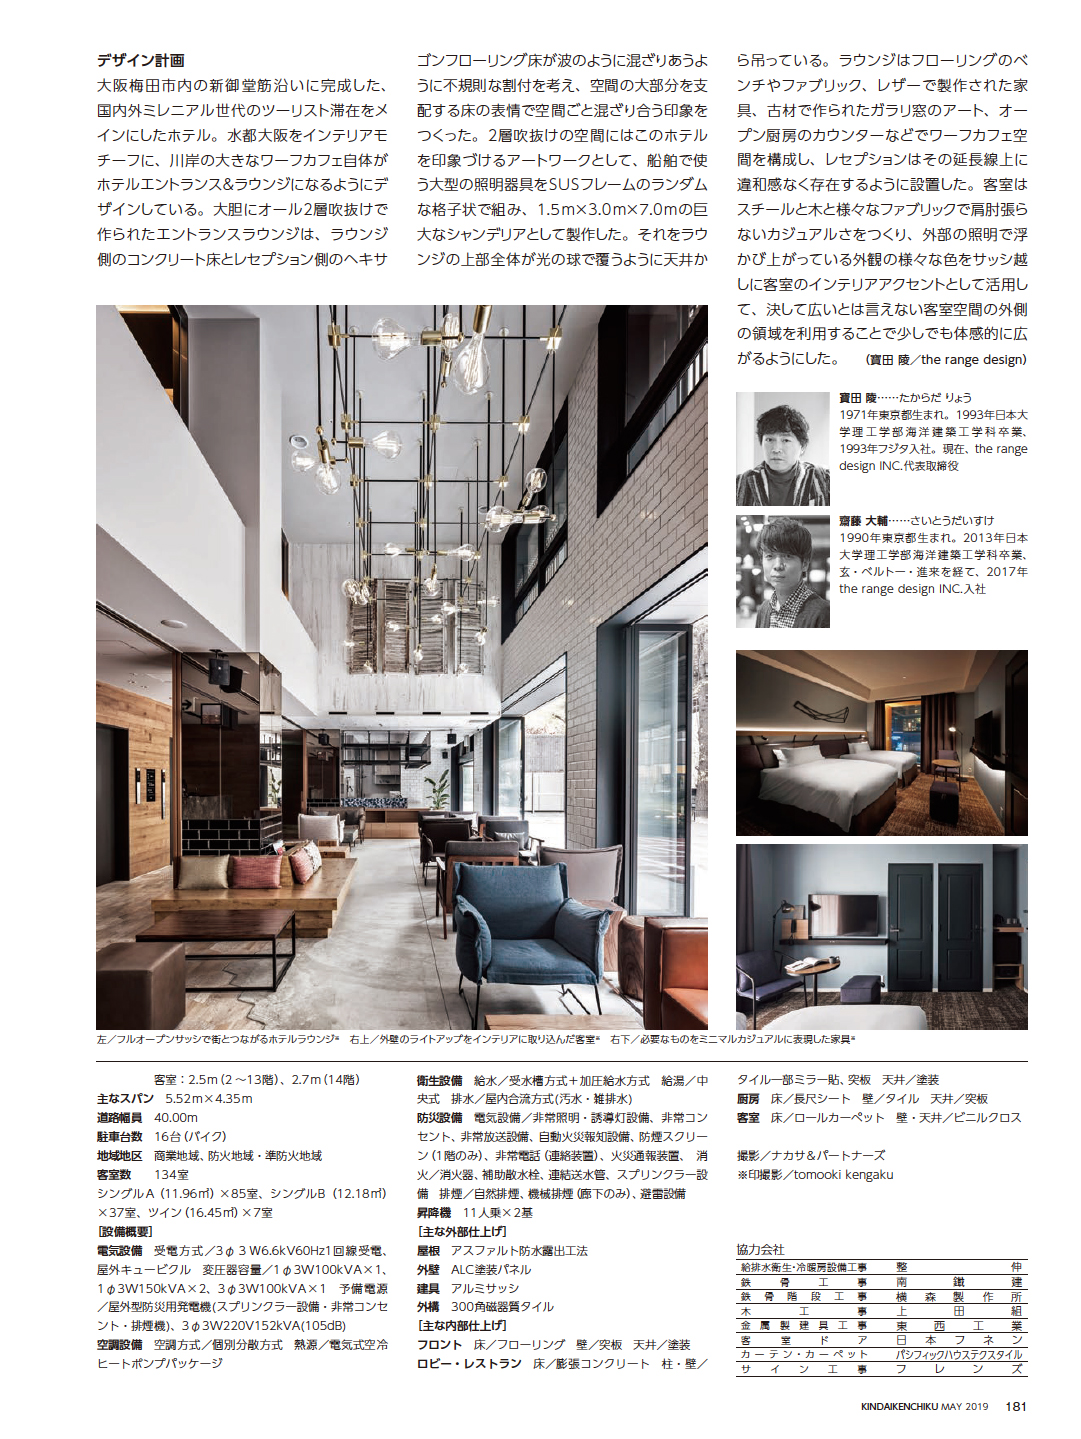 ネストホテル大阪梅田」が建築専門誌「近代建築」に掲載されました